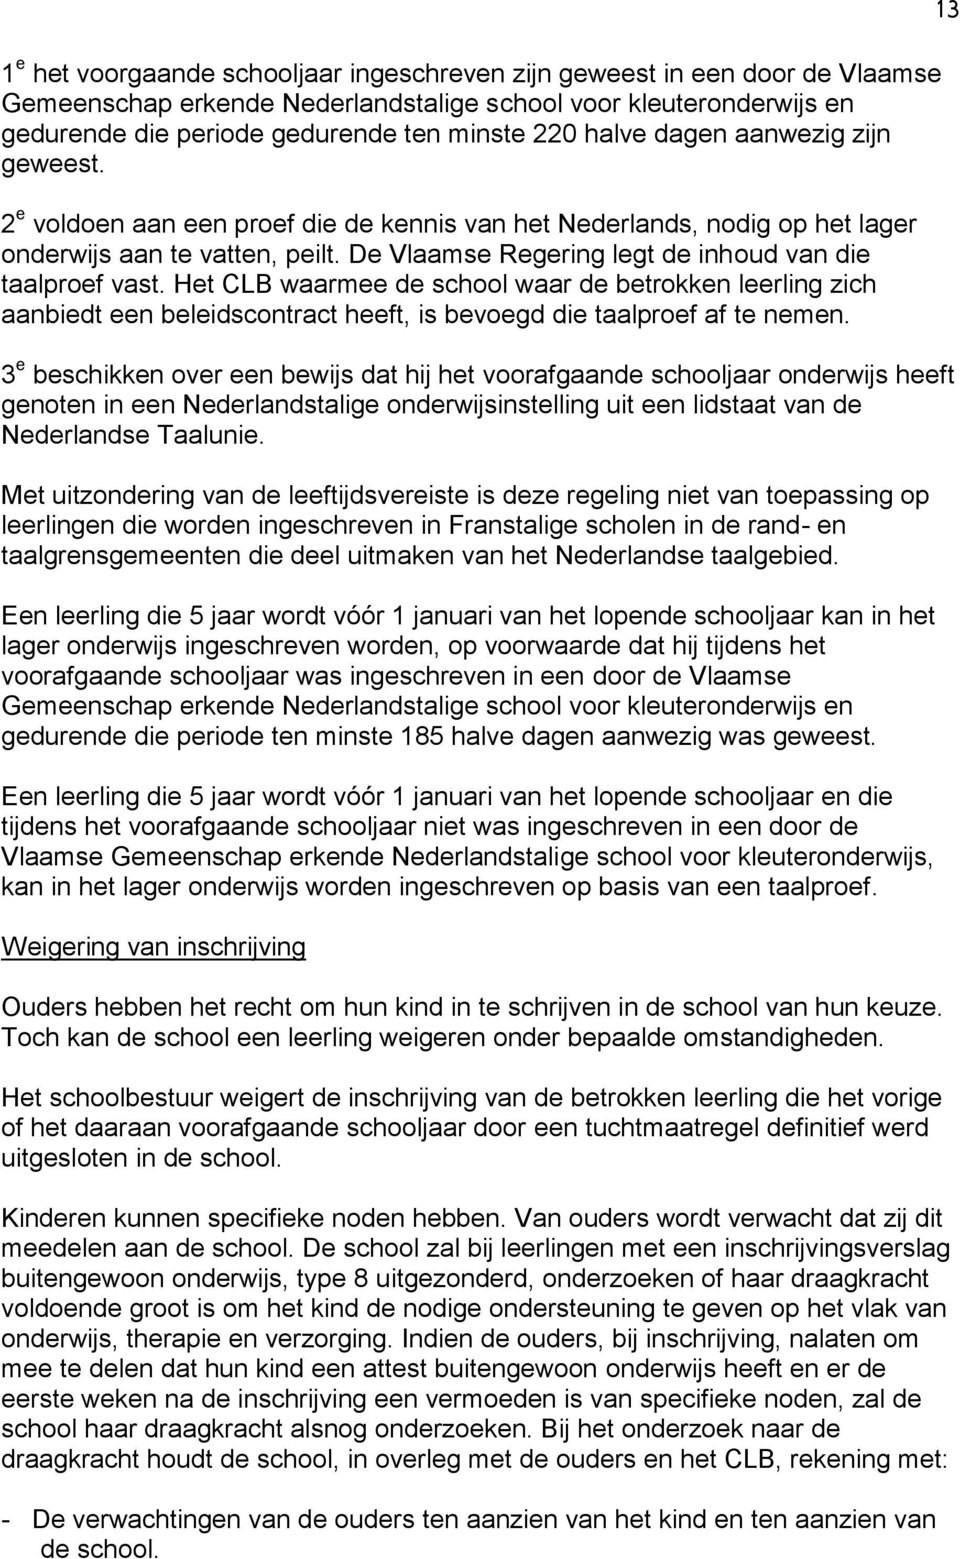 De Vlaamse Regering legt de inhoud van die taalproef vast. Het CLB waarmee de school waar de betrokken leerling zich aanbiedt een beleidscontract heeft, is bevoegd die taalproef af te nemen.